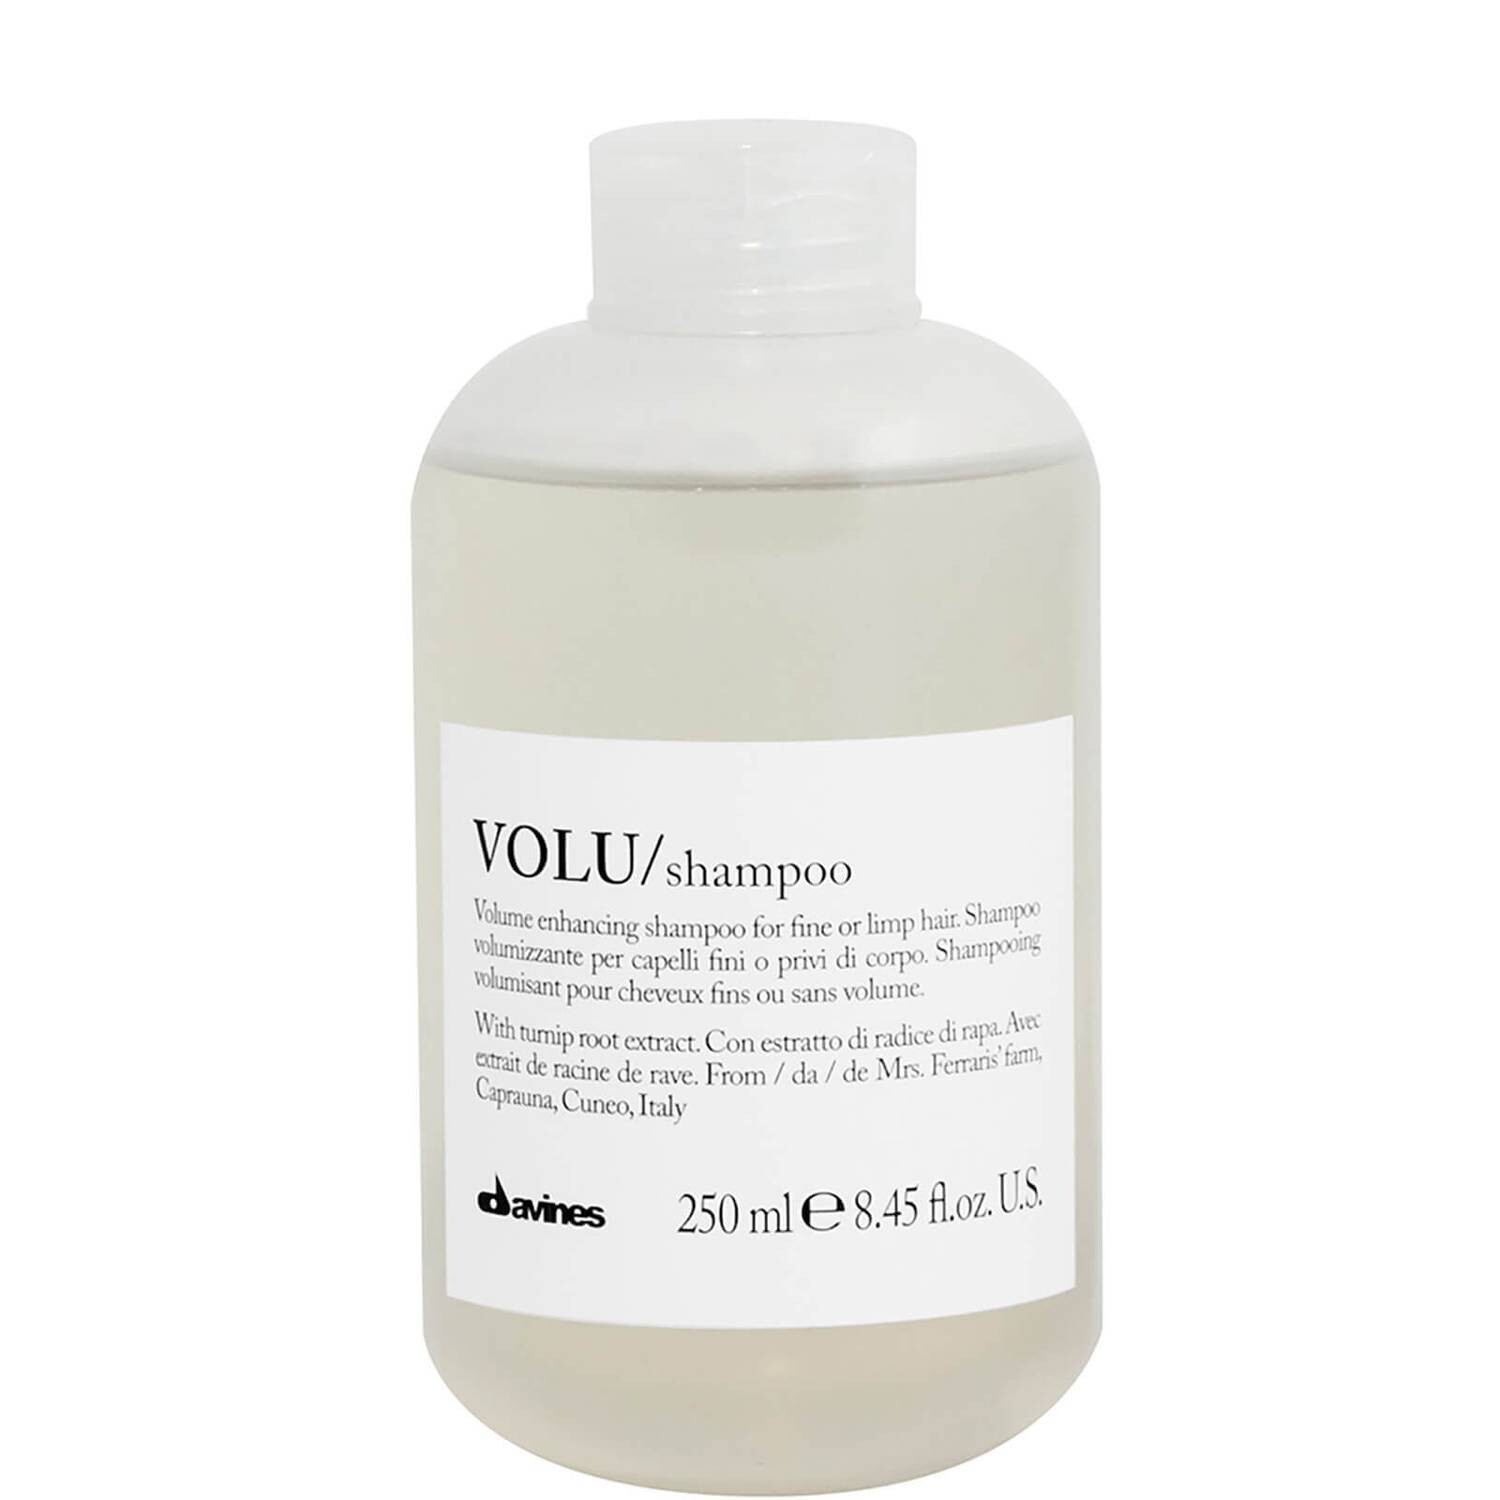 Volu/Shampoo